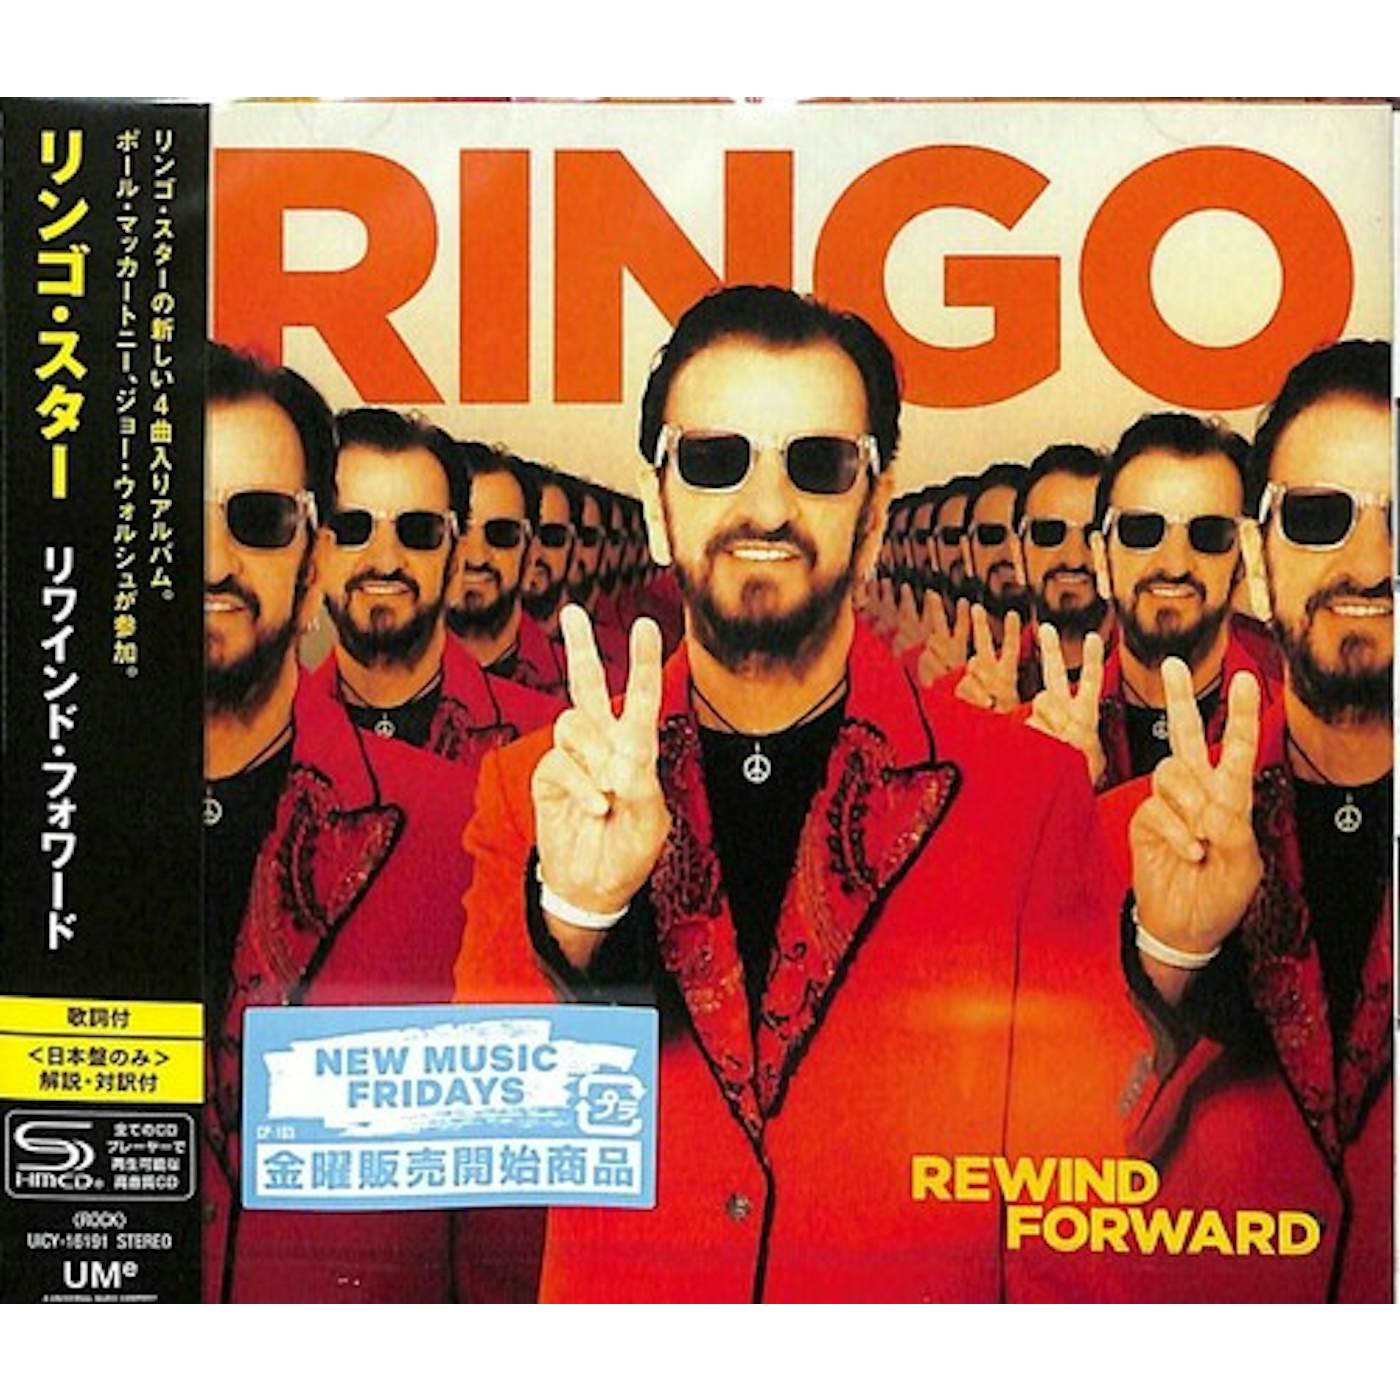 Ringo Starr REWIND FORWARD CD